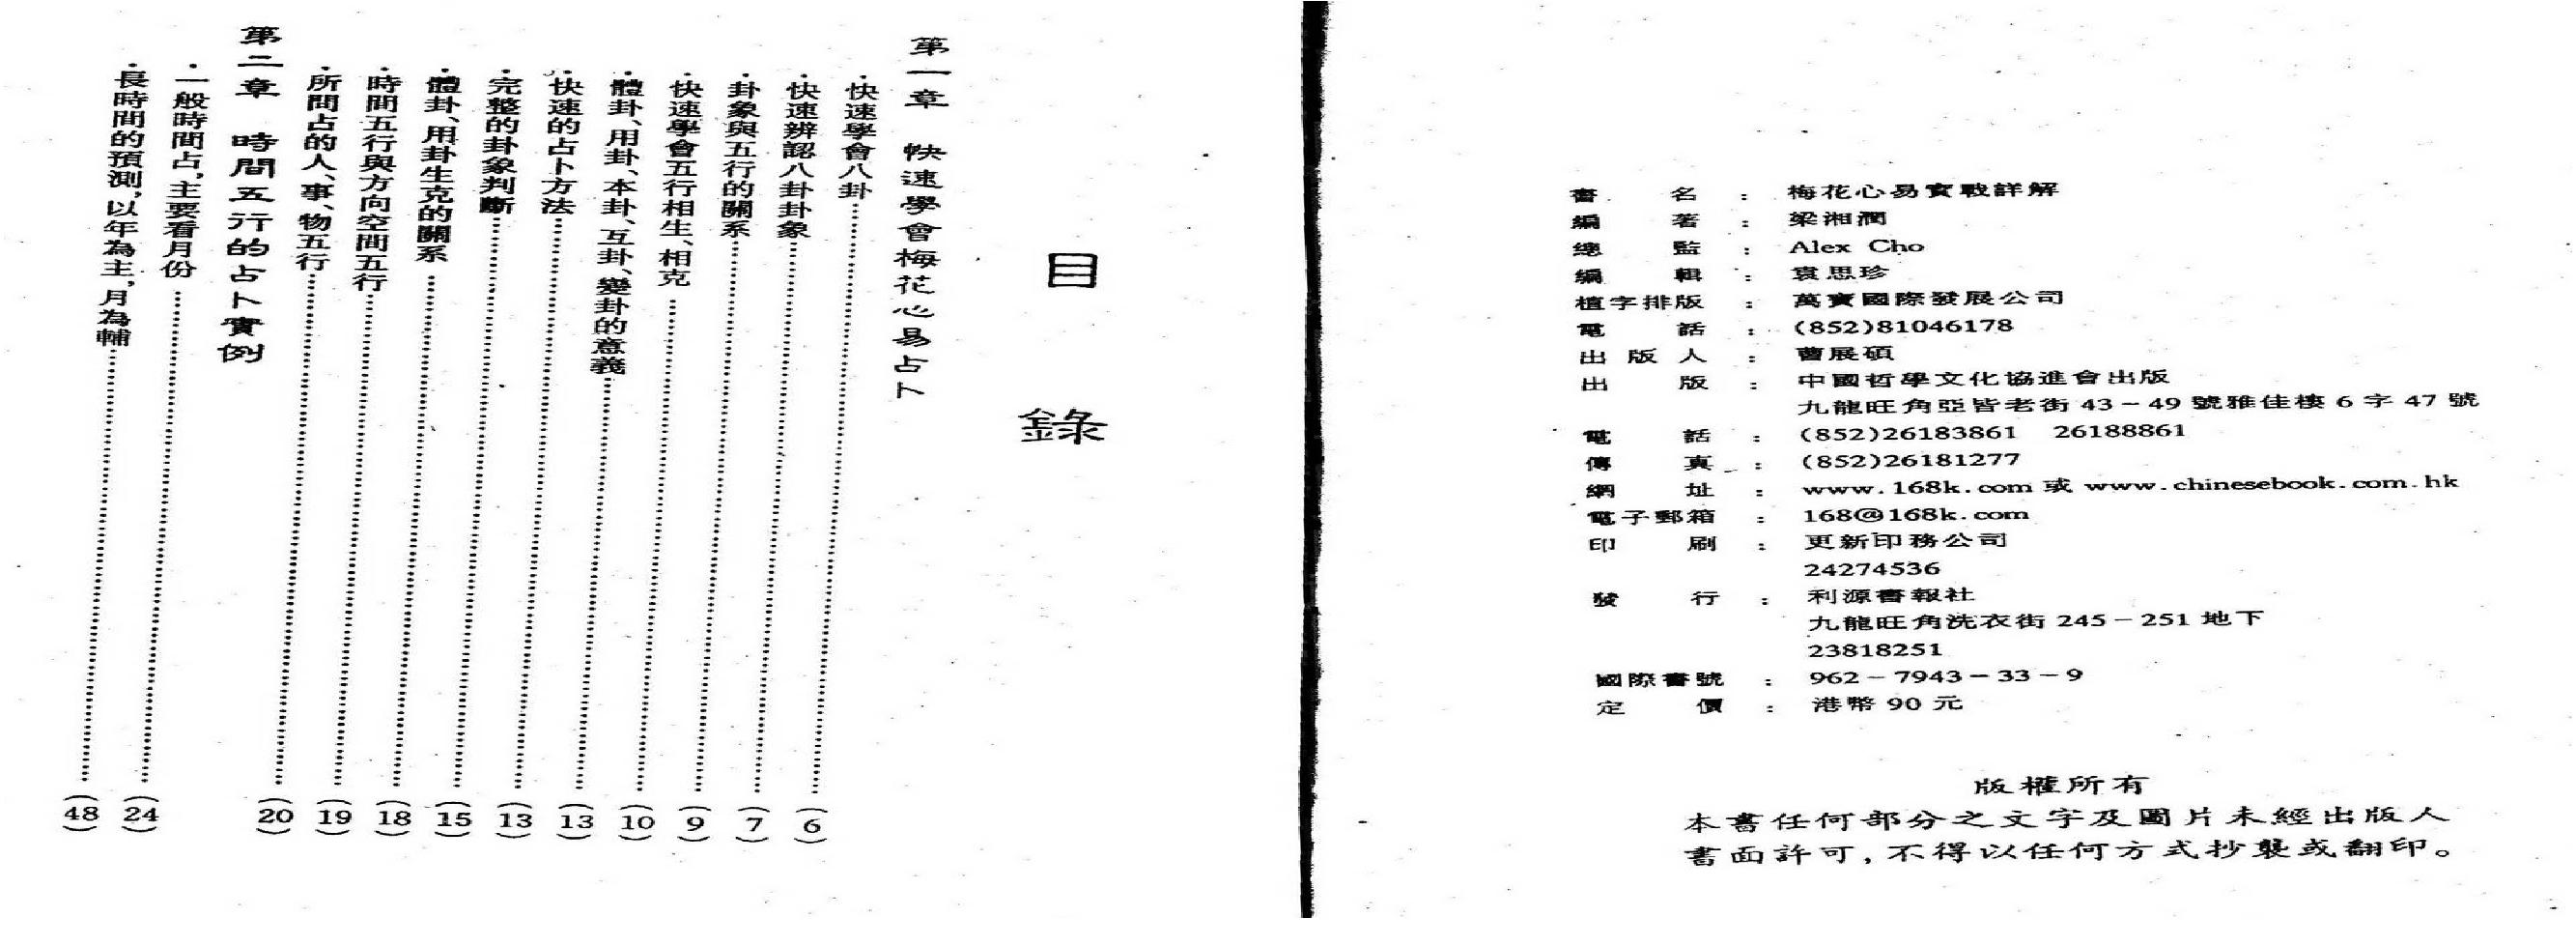 梁湘润-梅花心易实战详解.pdf(20.41MB_144页)